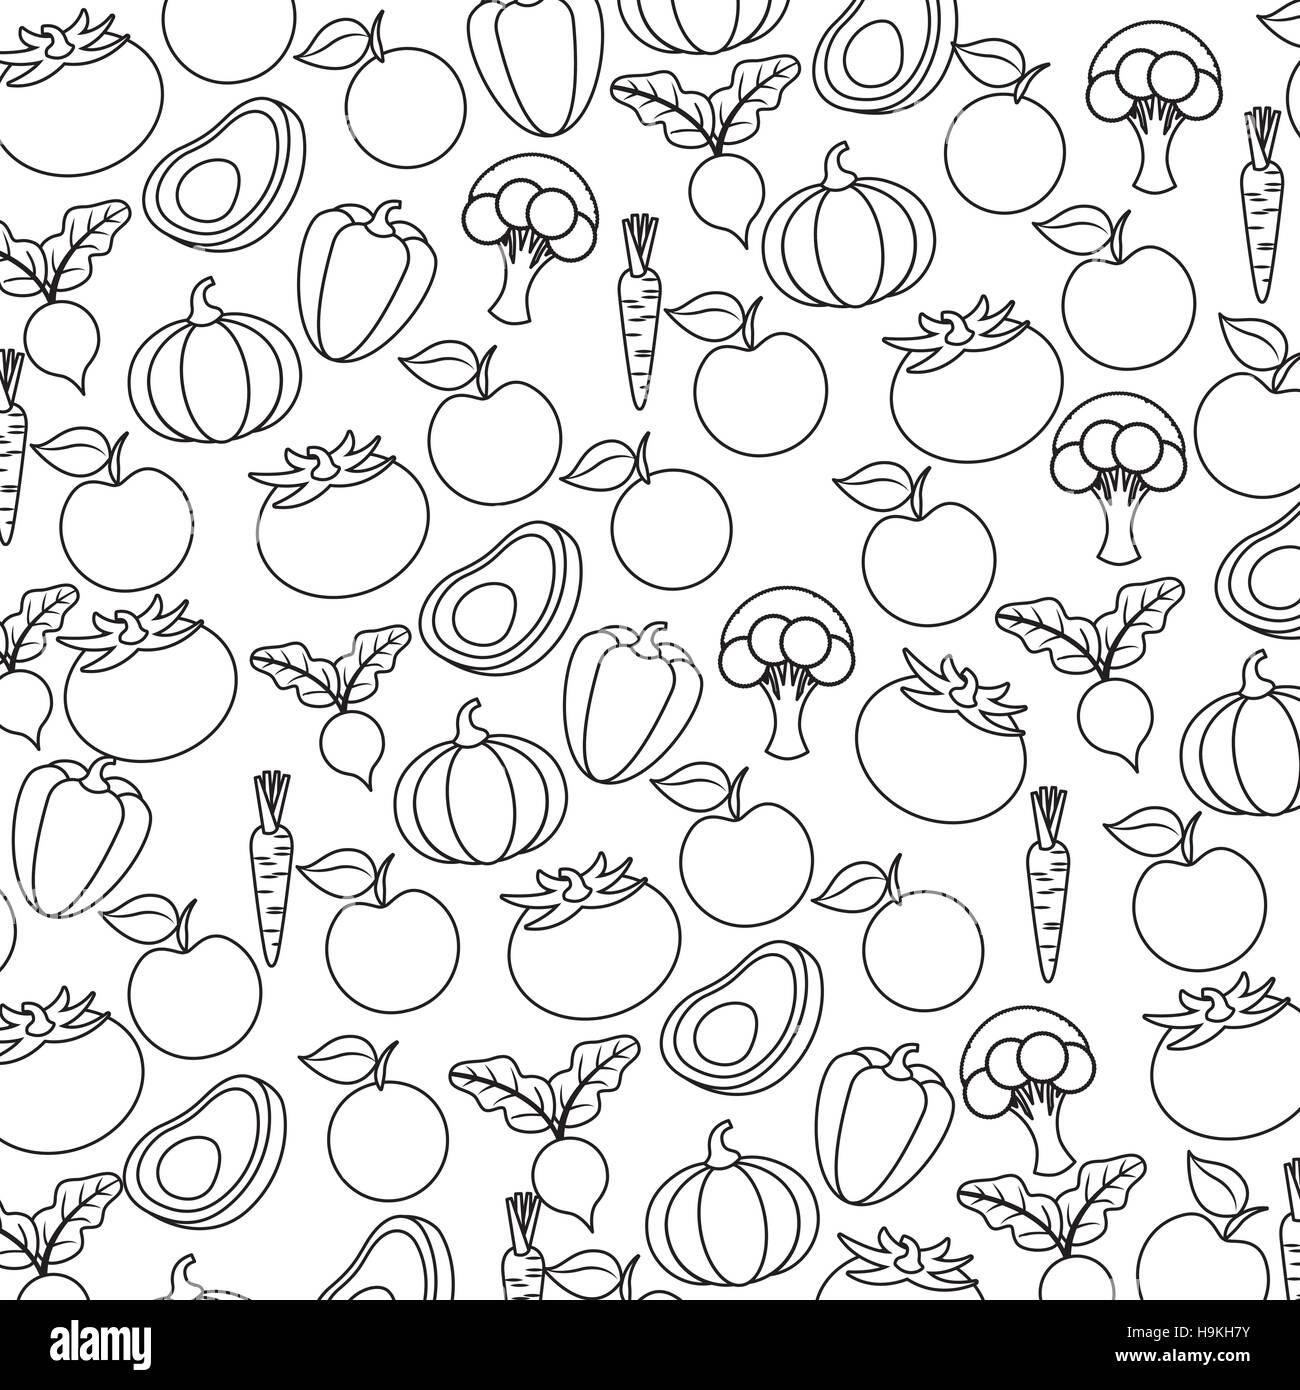 Hintergrund von Gemüse. gesunde Food-Design. Vektor-illustration Stock Vektor